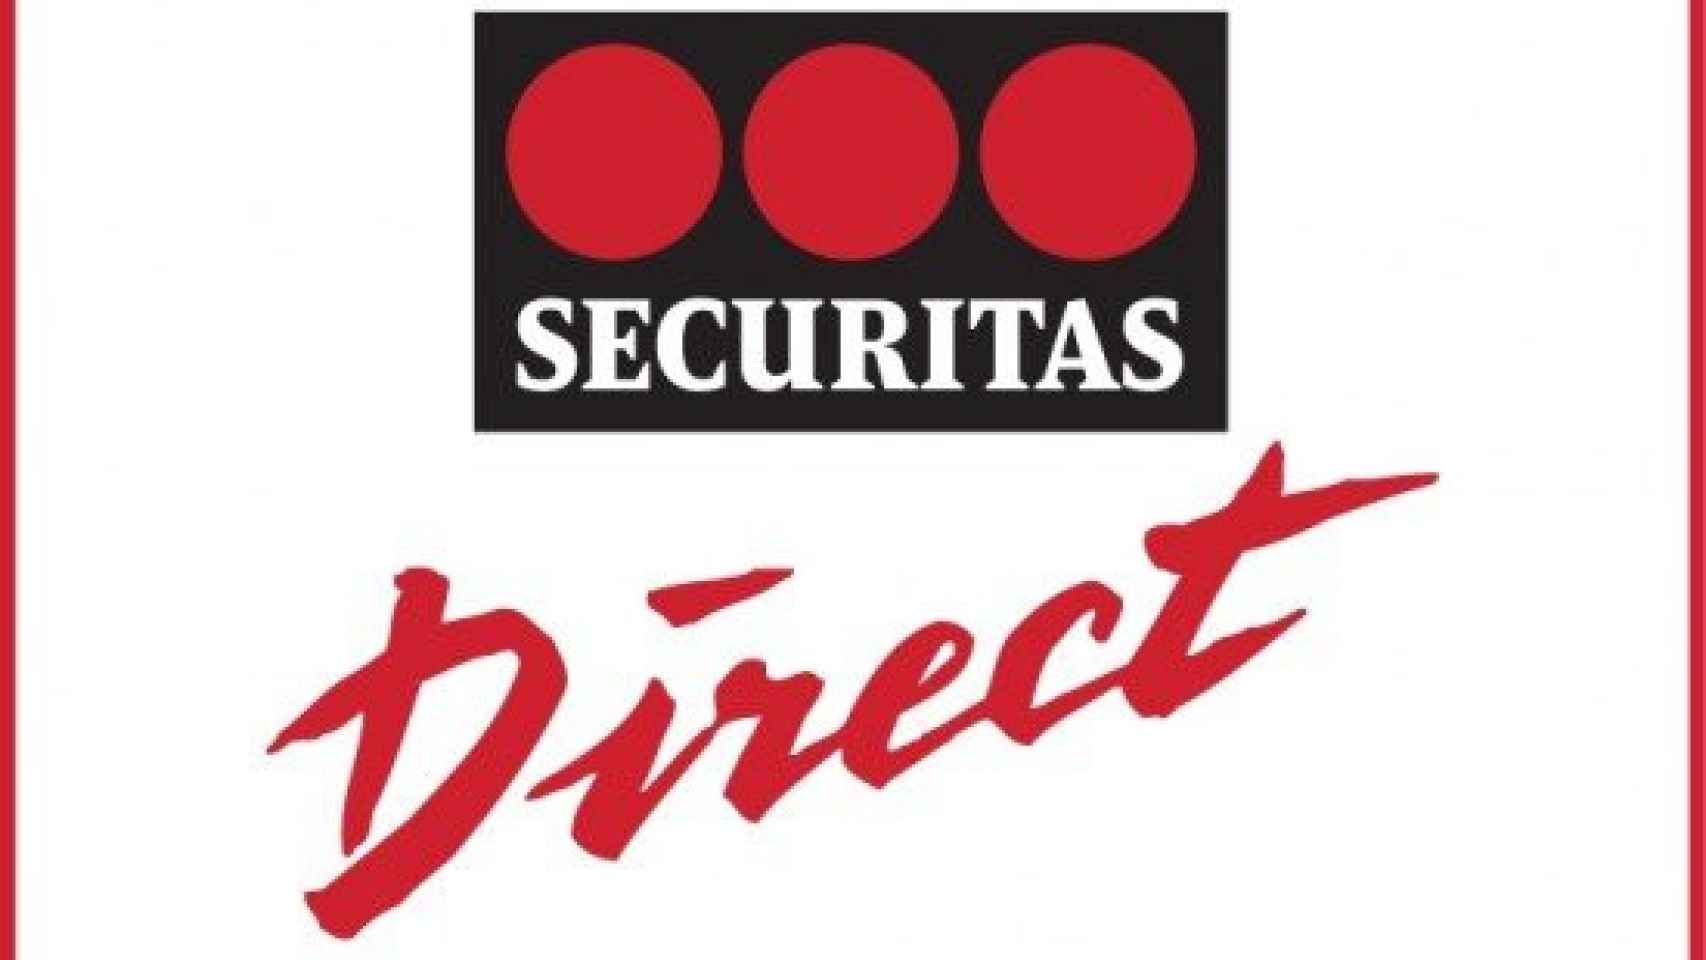 SECURITAS DIRECT / CG